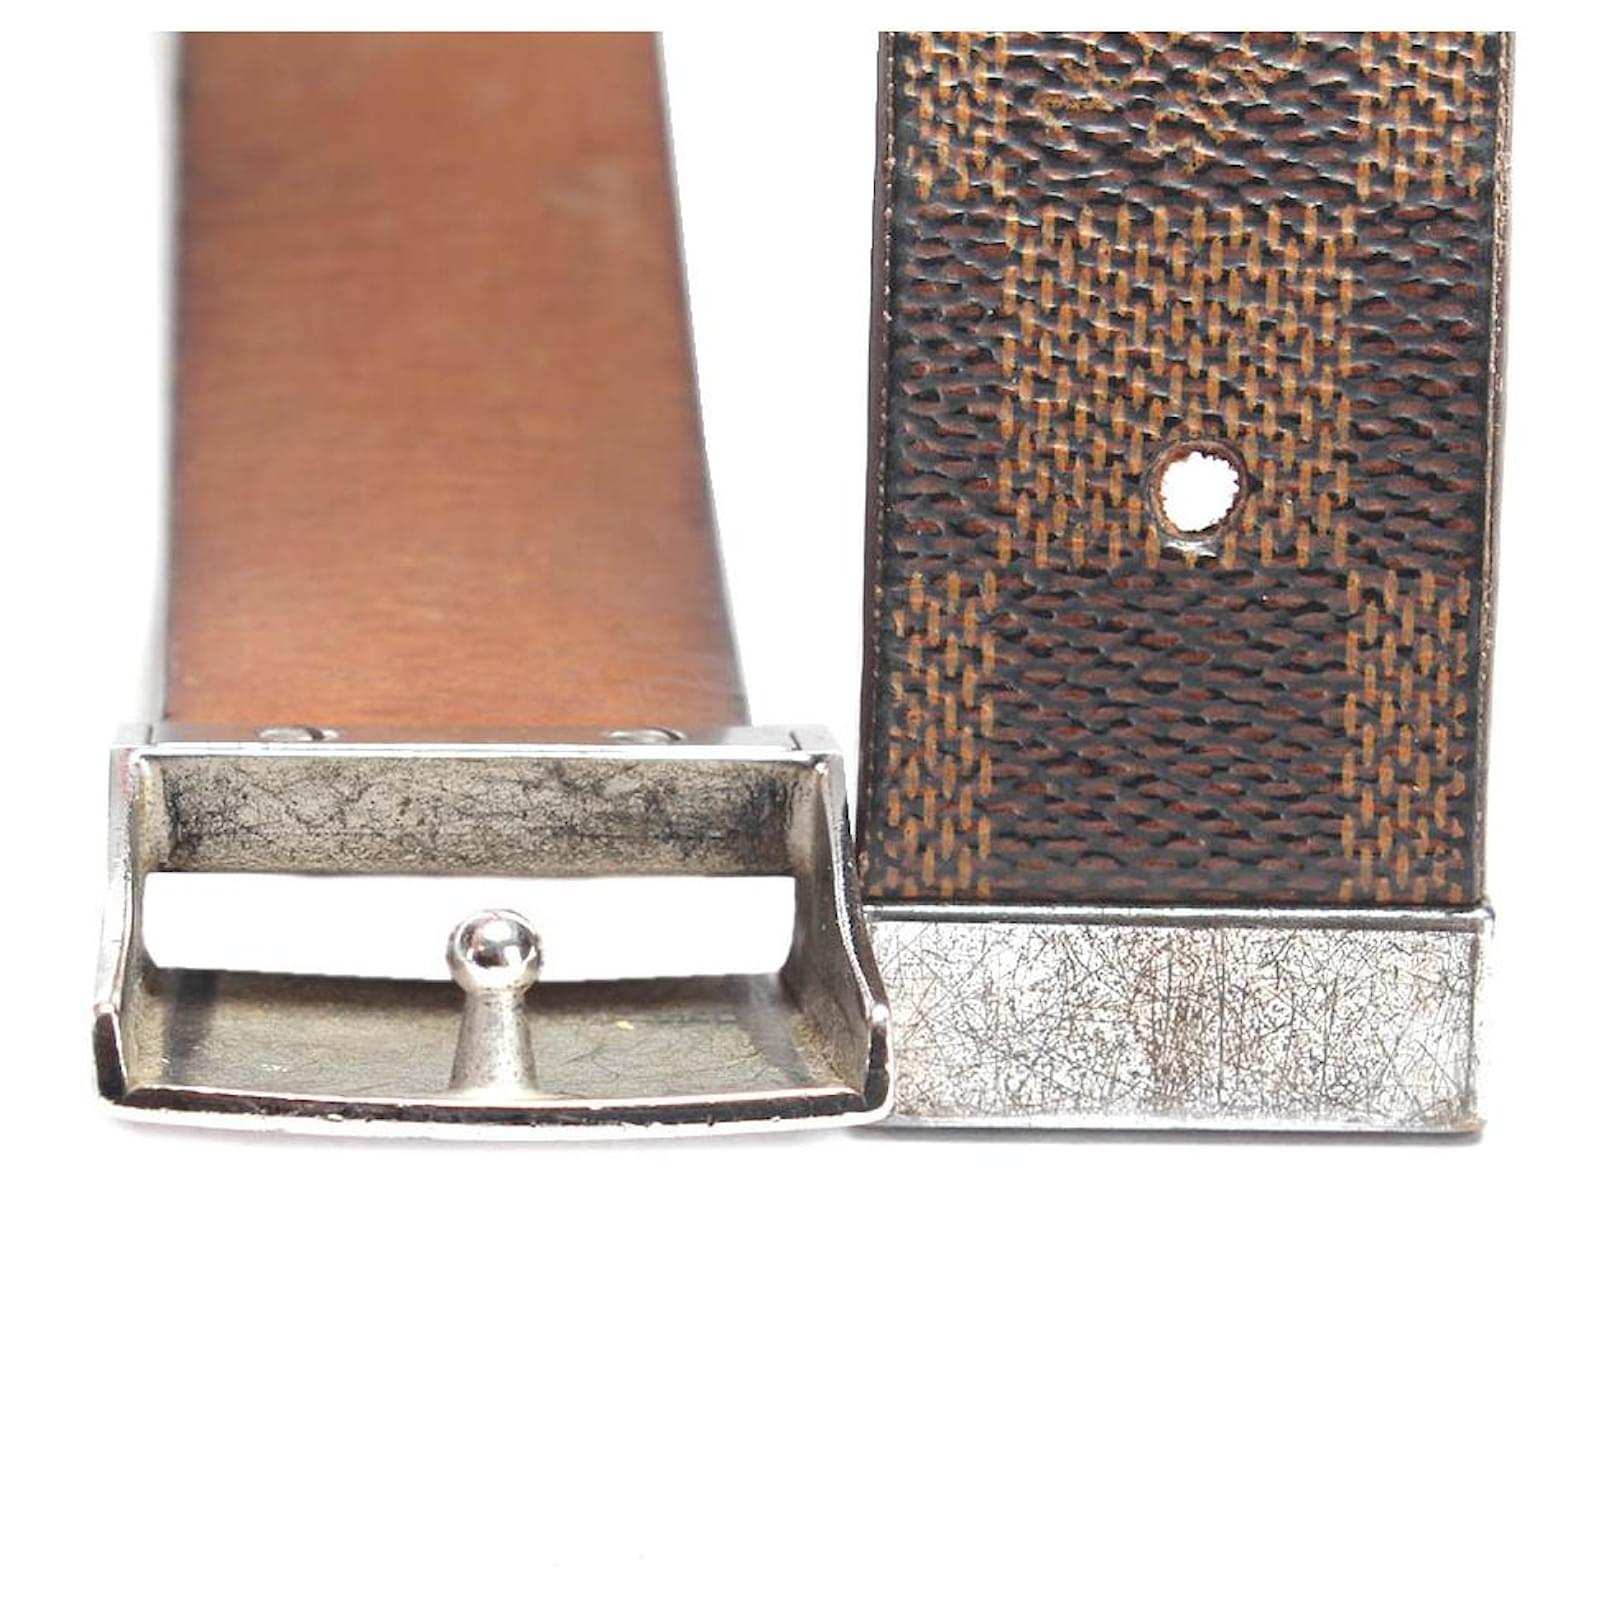 Louis Vuitton Inventeur Dark Brown Leather Belt Size 34 – Genuine Design  Luxury Consignment